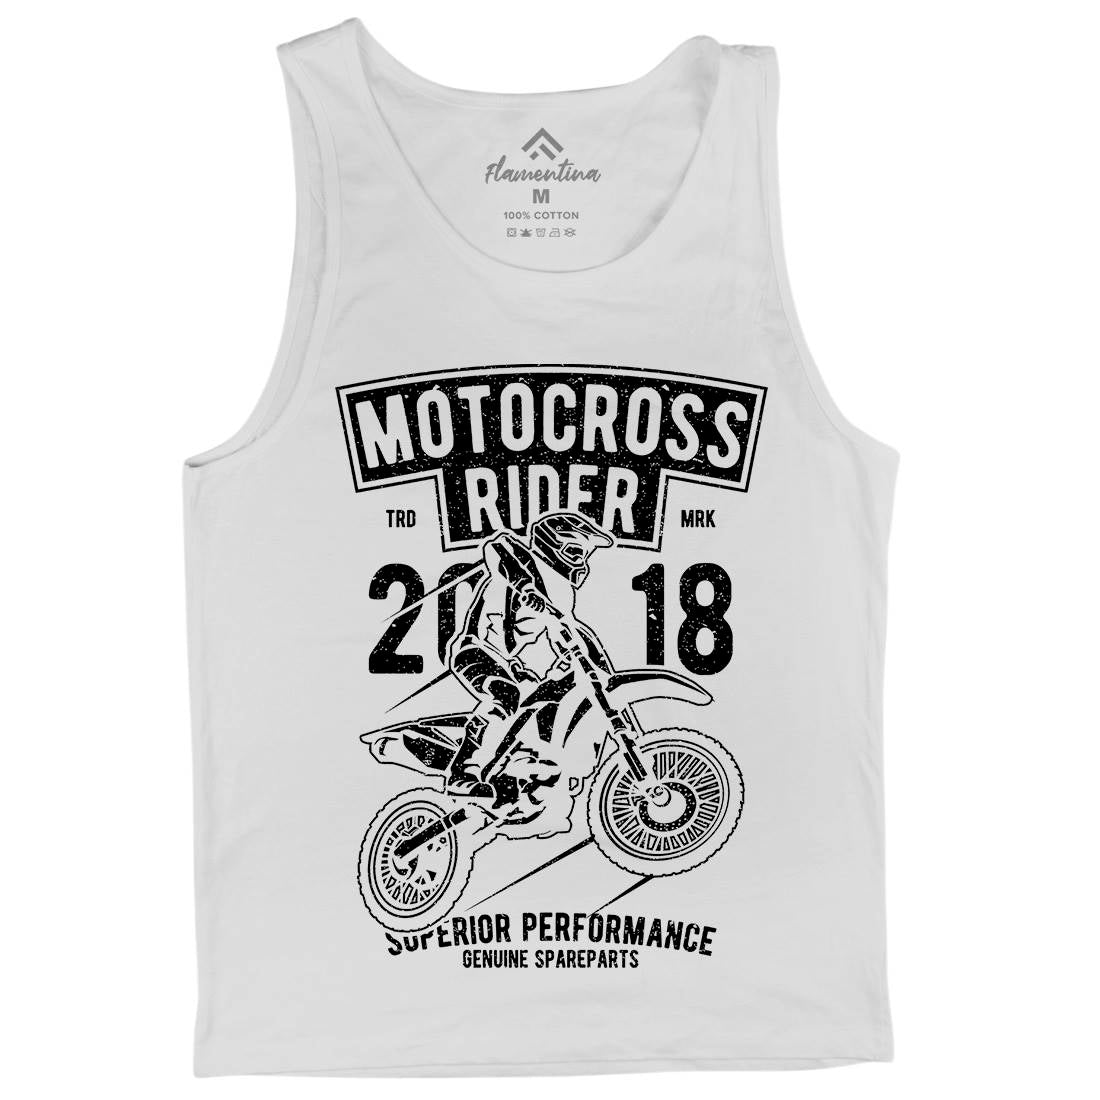 Motocross Rider Mens Tank Top Vest Motorcycles A718